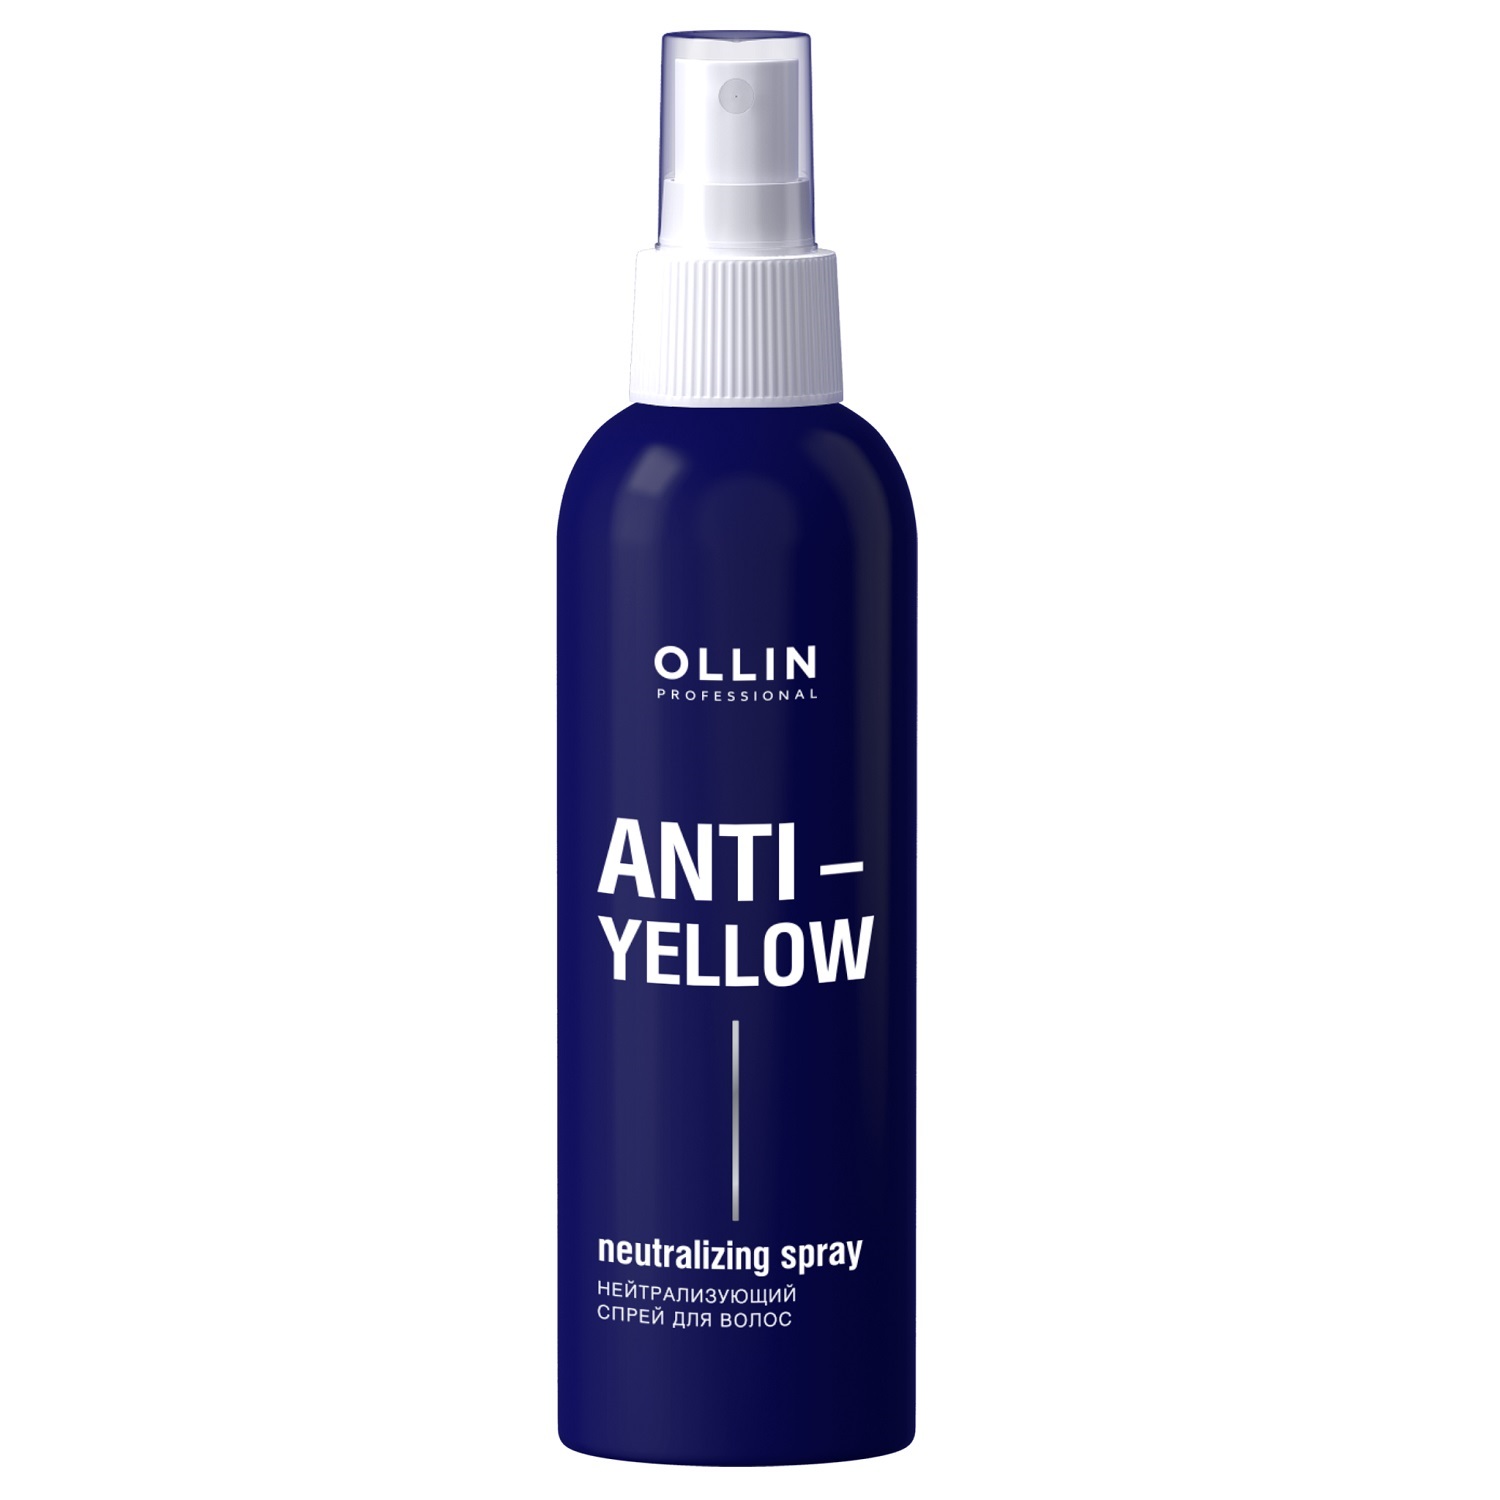 Ollin Professional Нейтрализующий спрей для волос Anti-Yellow Neutralizing Spray, 150 мл (Ollin Professional, Anti-Yellow)